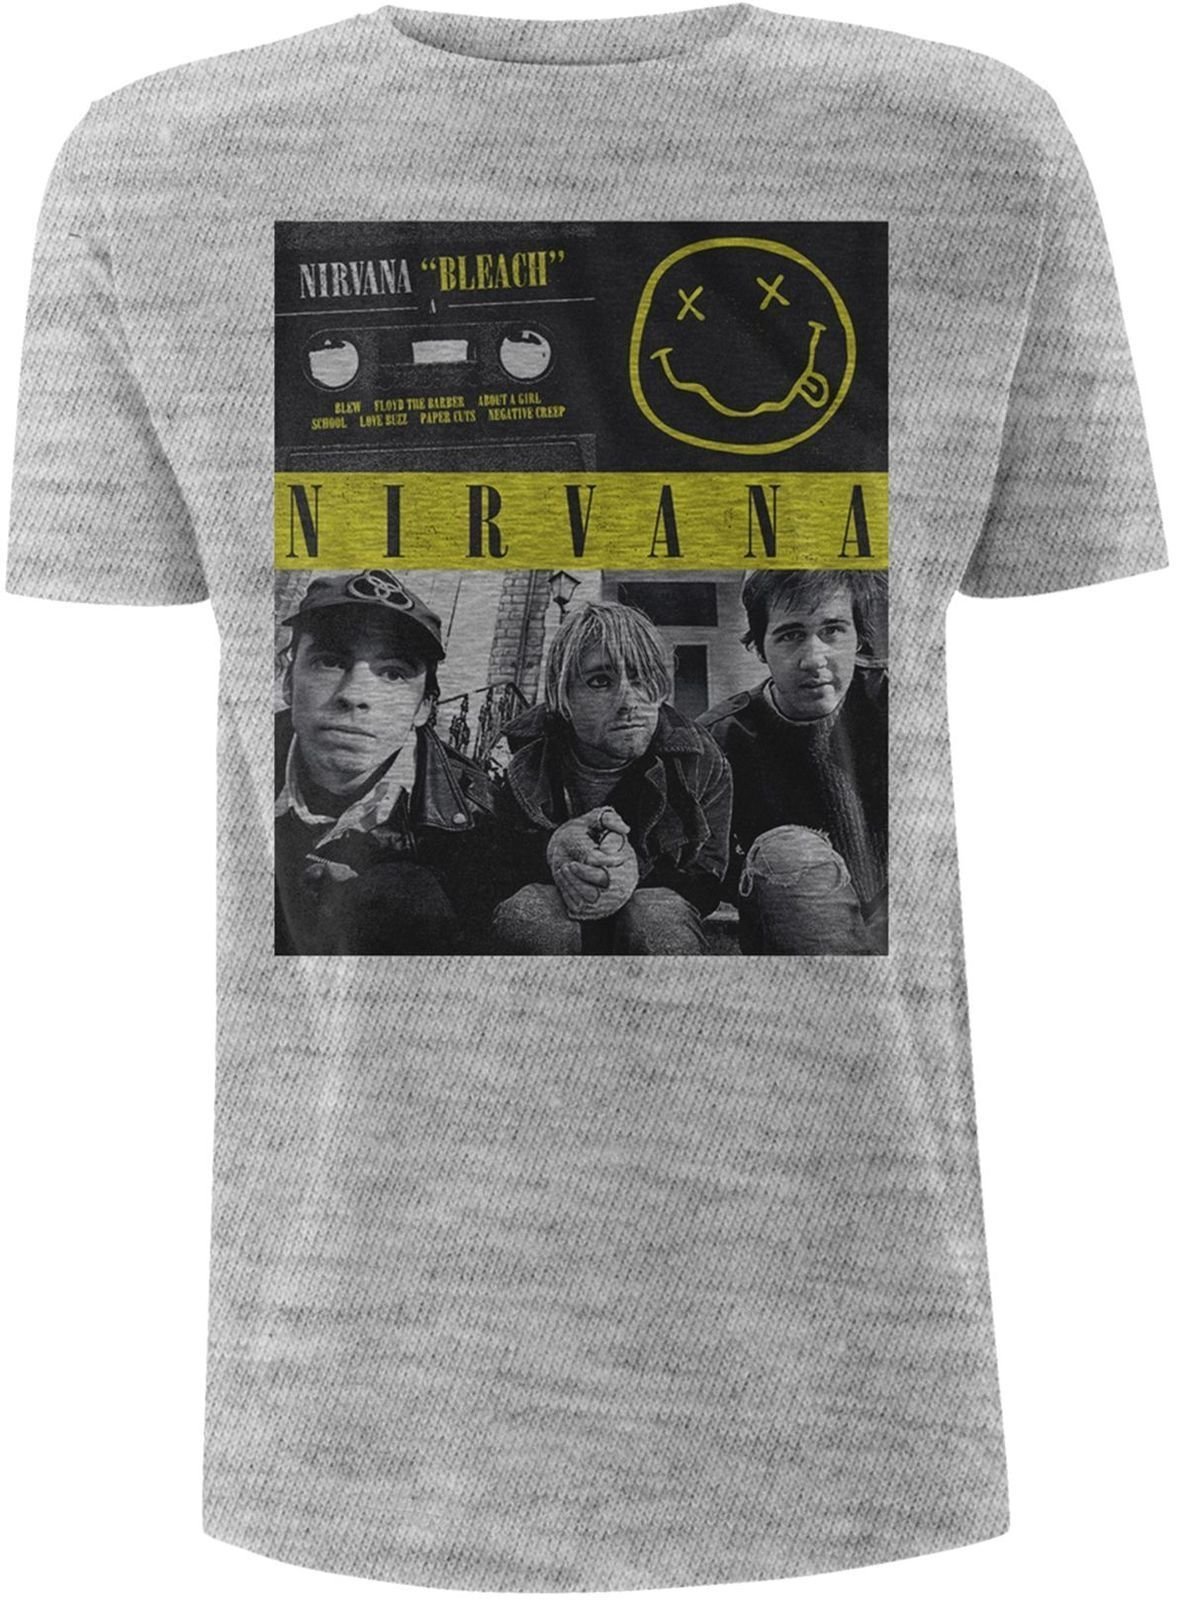 T-shirt Nirvana T-shirt Bleach Tape Homme Grey S